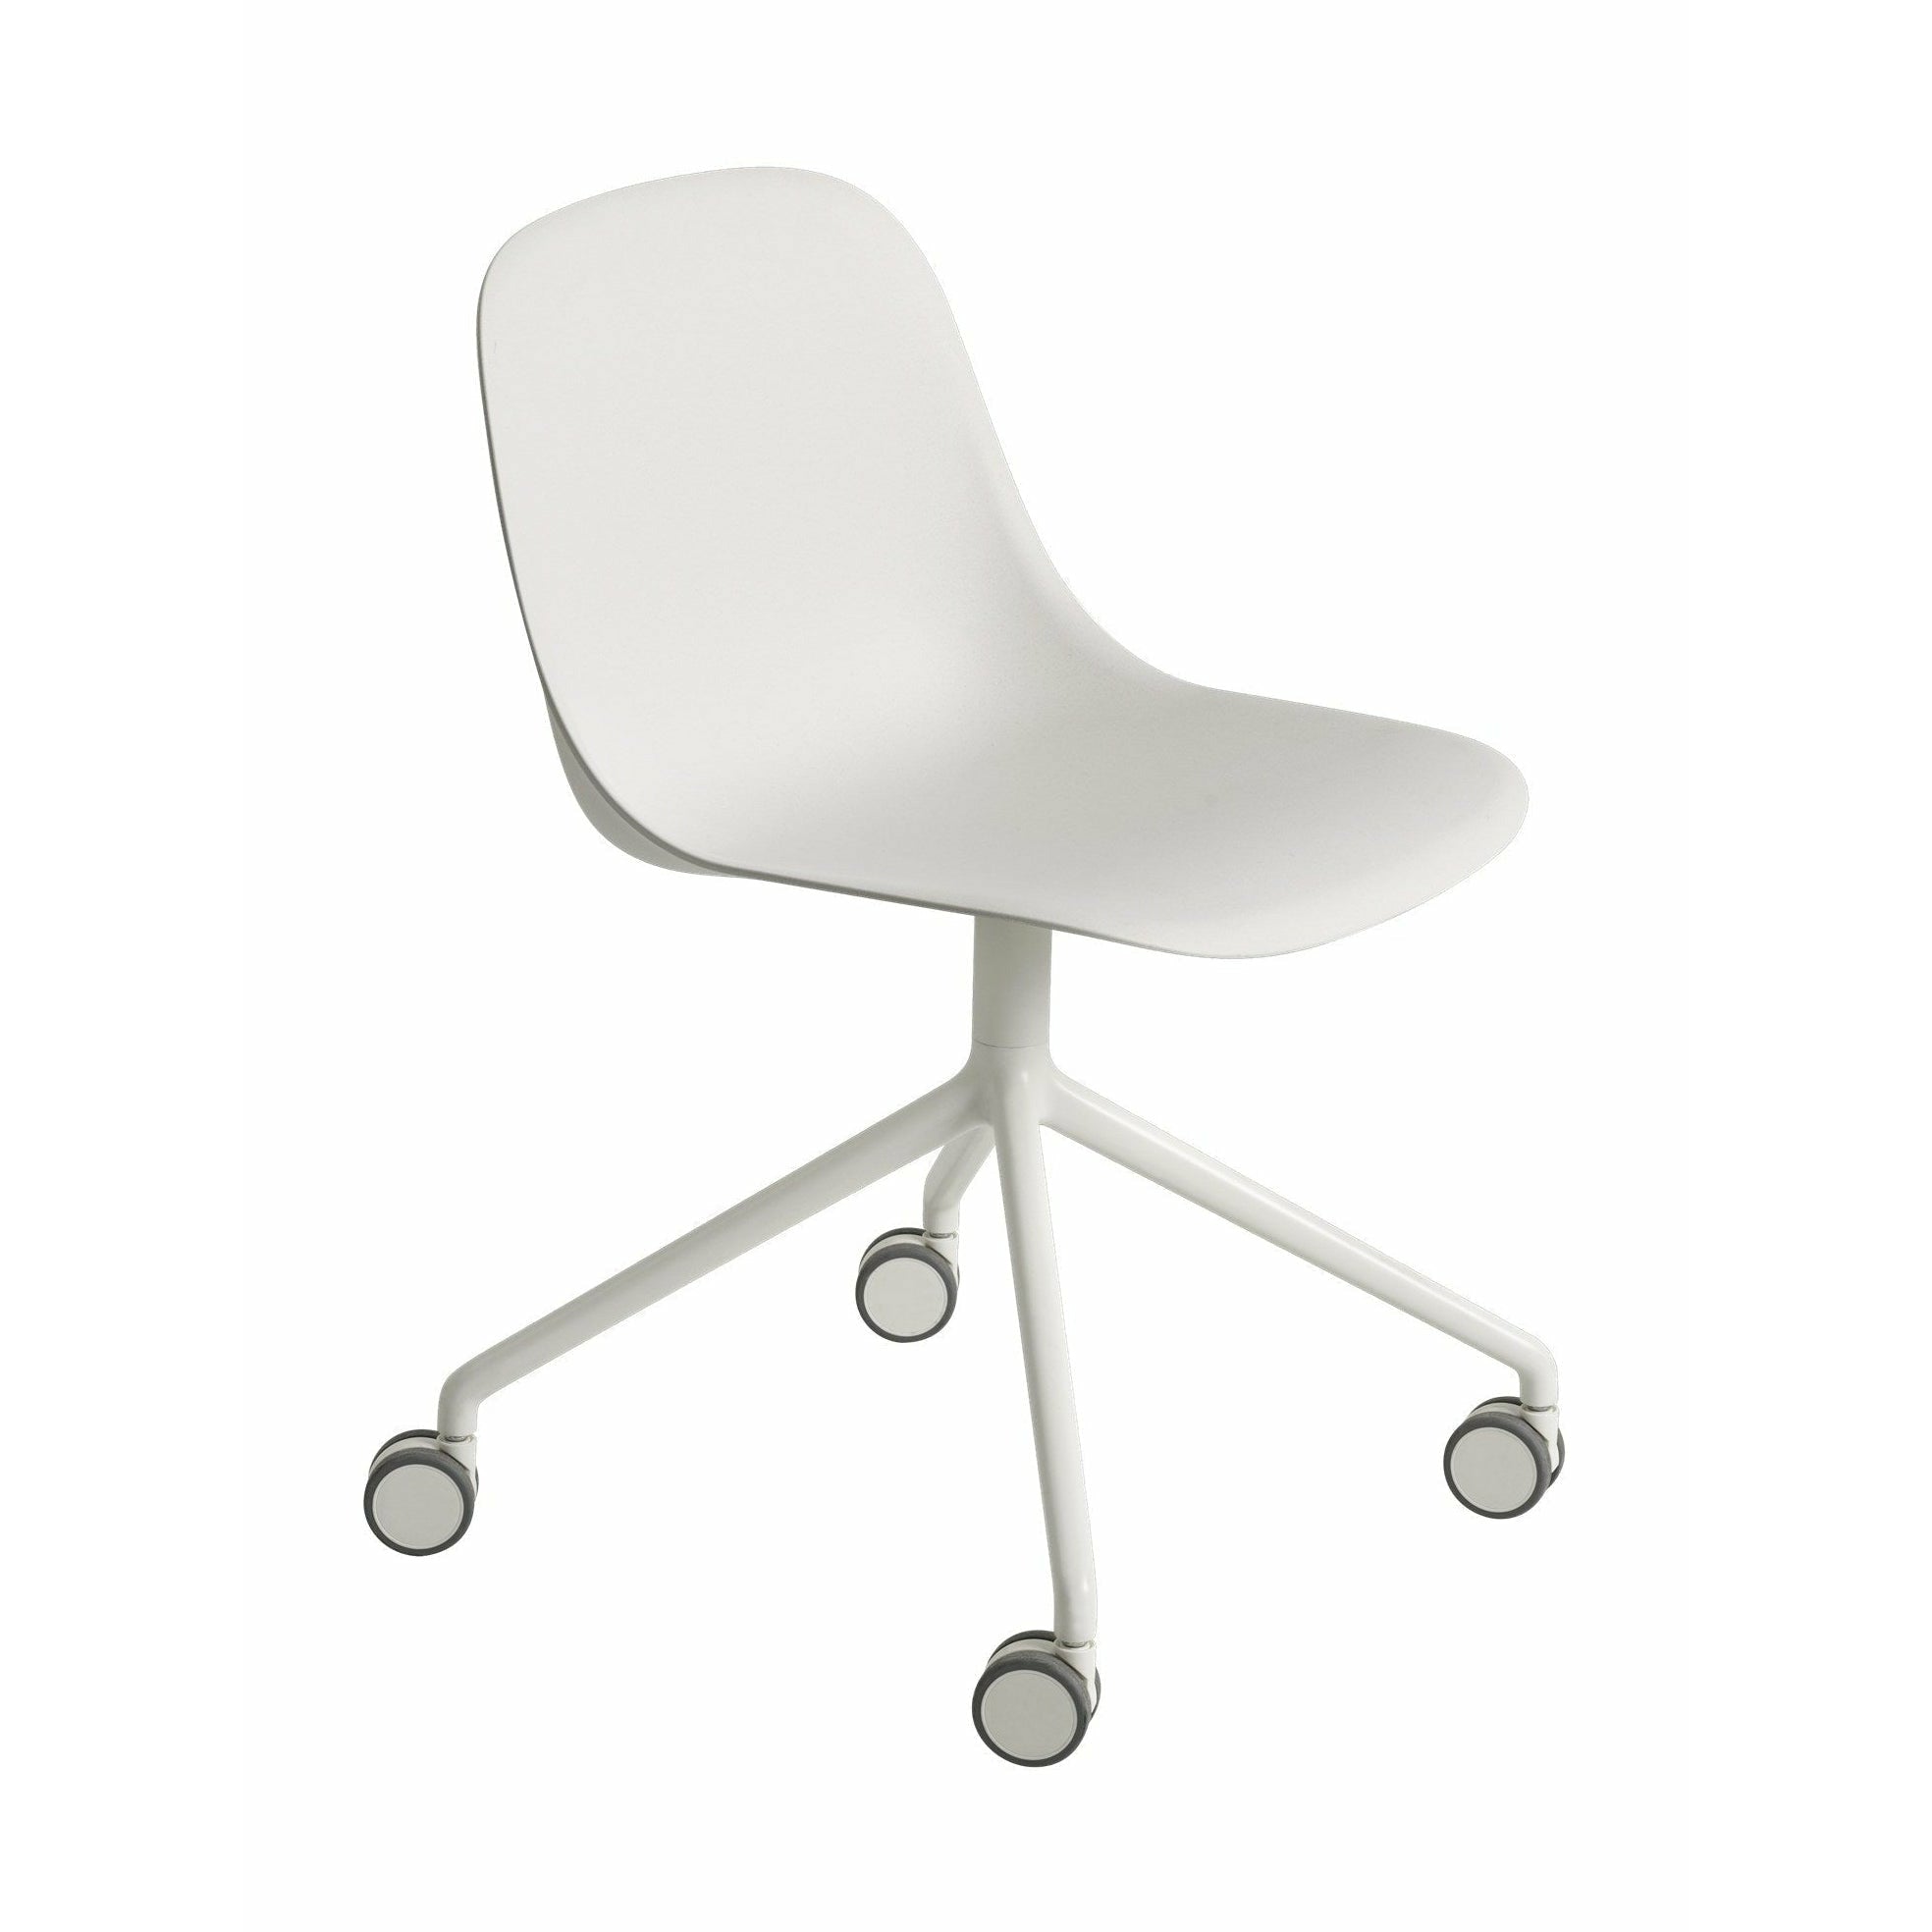 Muuto Vezelzijde stoel gemaakt van gerecycled plastic draaimedel met wielen, natuurlijk wit/wit